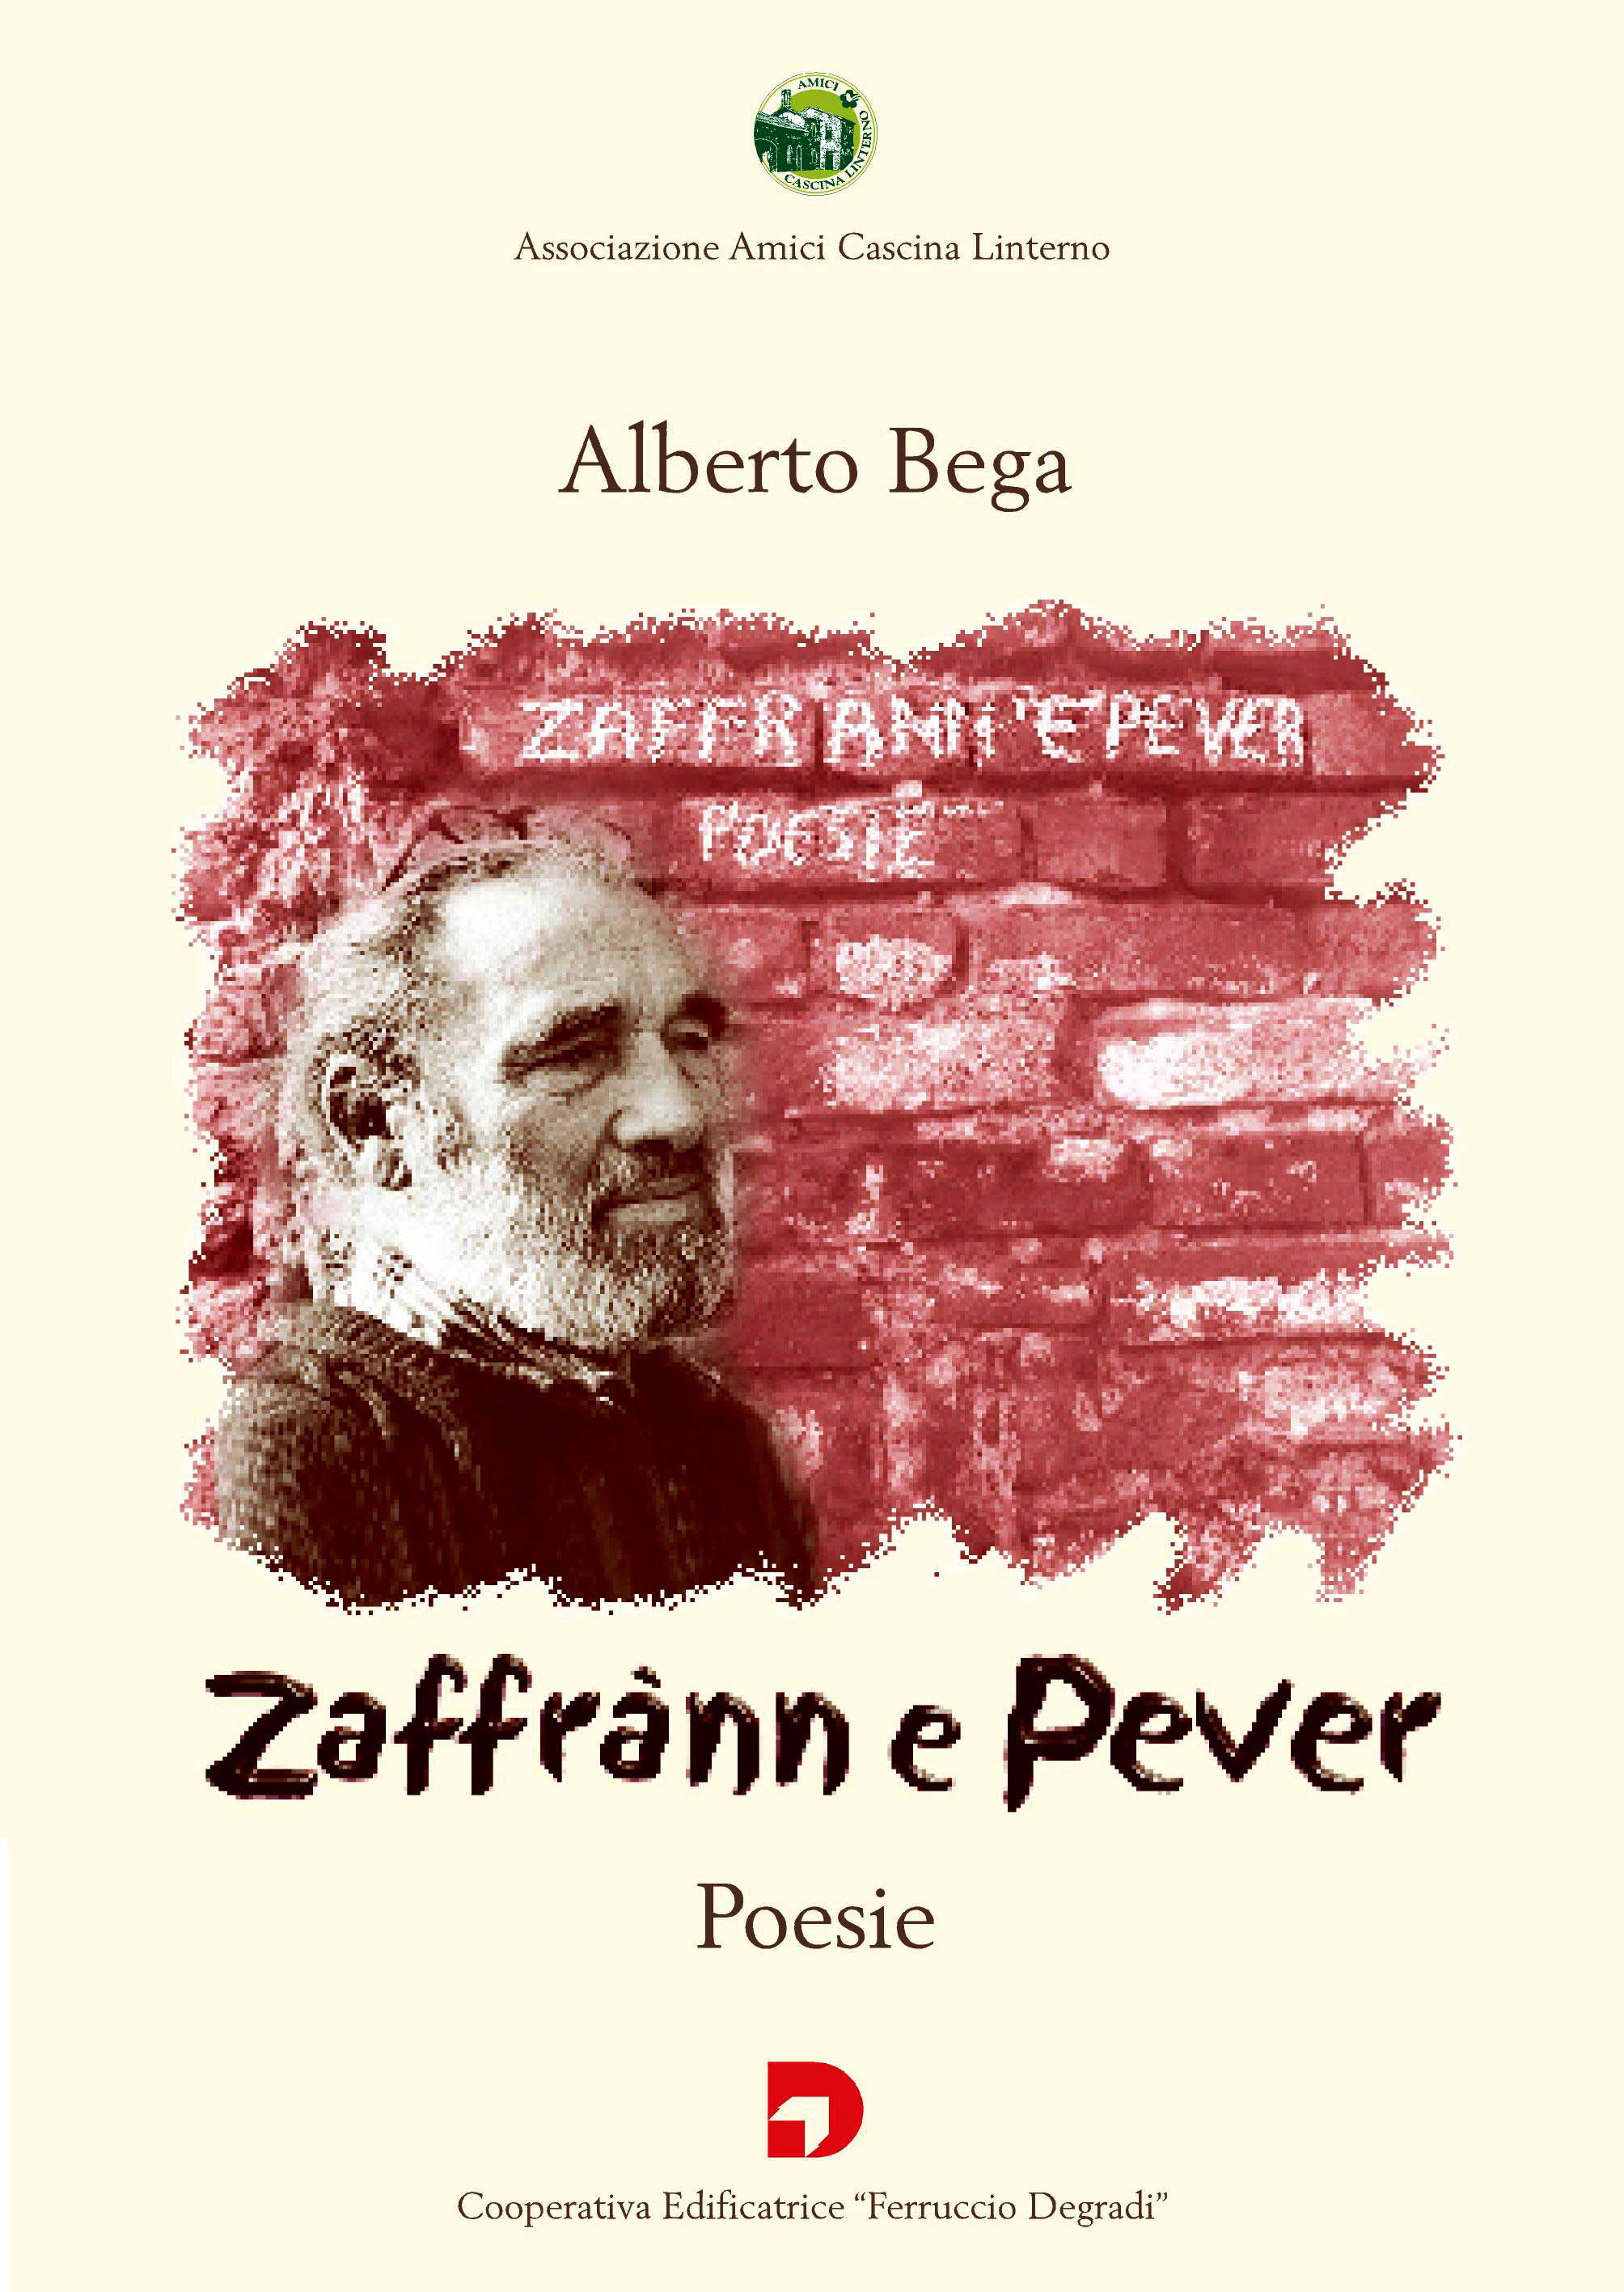 Copertina del libro di poesie di Alberto Bega 'Zaffran e Pever' (2003)